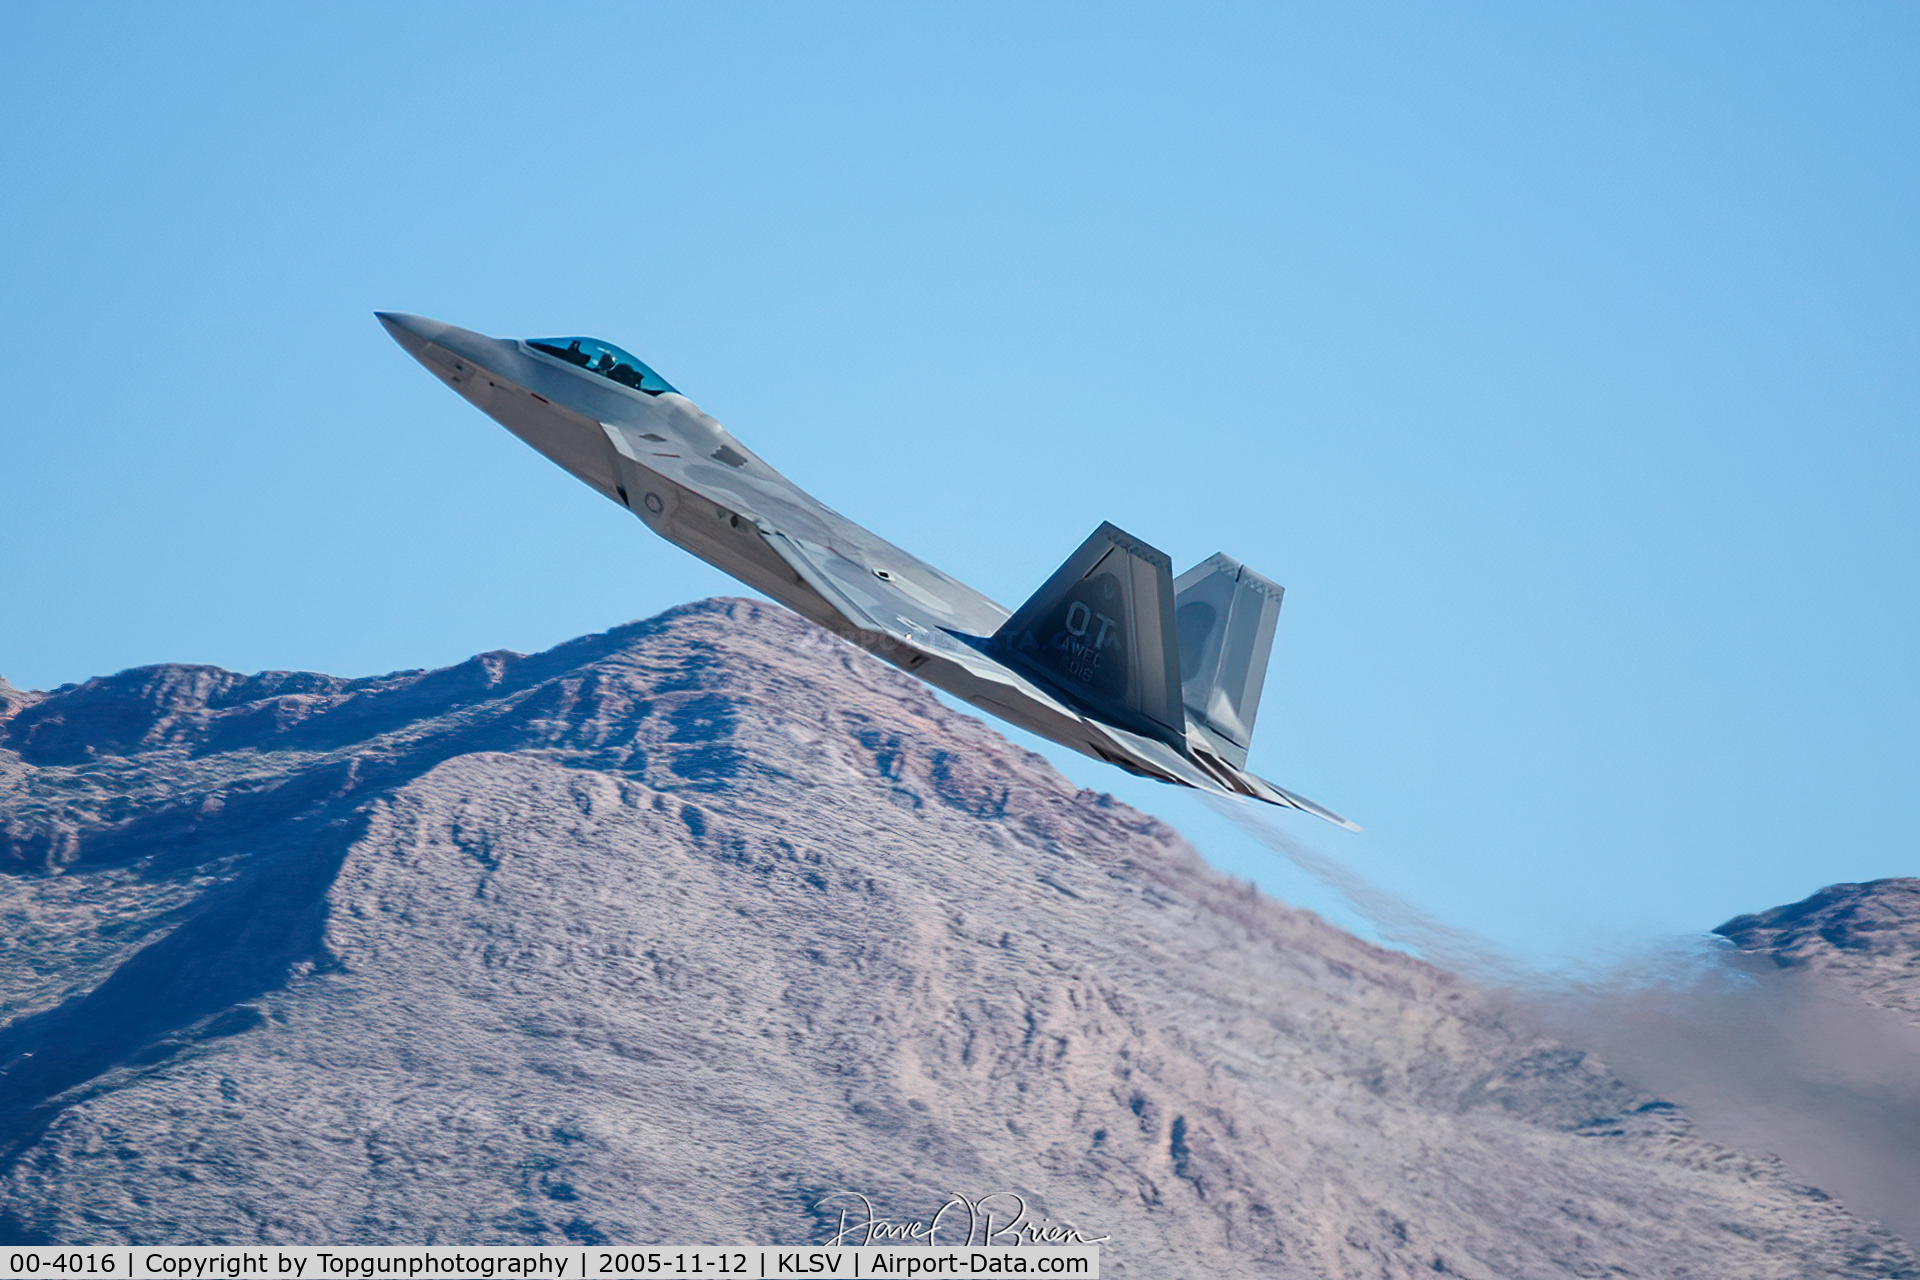 00-4016, 2000 Lockheed Martin F/A-22A Raptor C/N 4016, F-22 Raptor demo going vertical